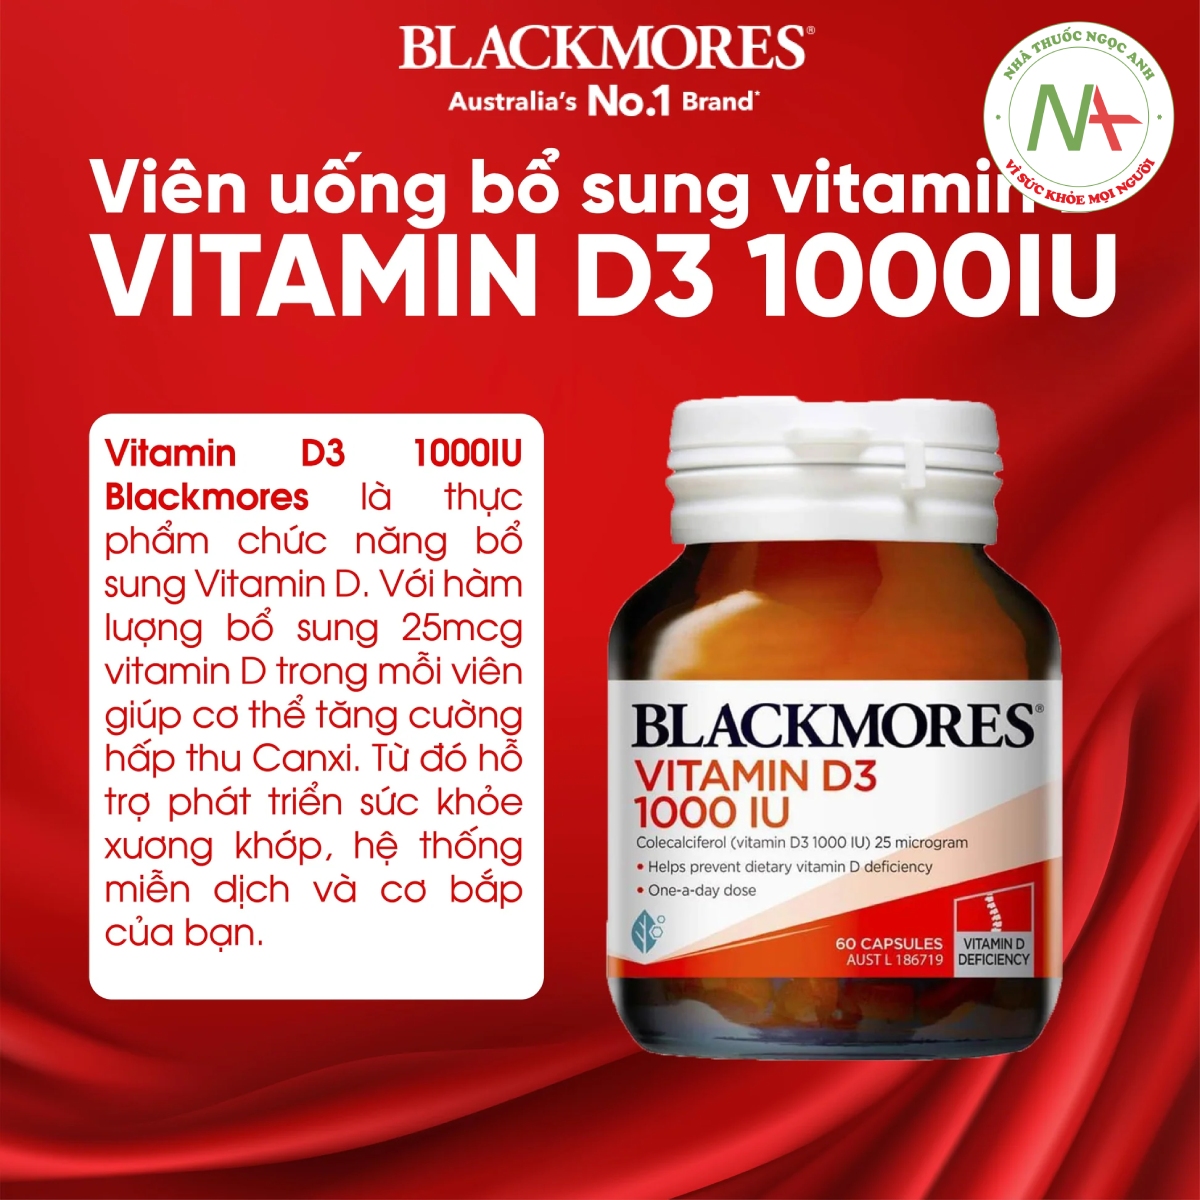 Hiệu quả của Vitamin D3 1000IU Blackmores